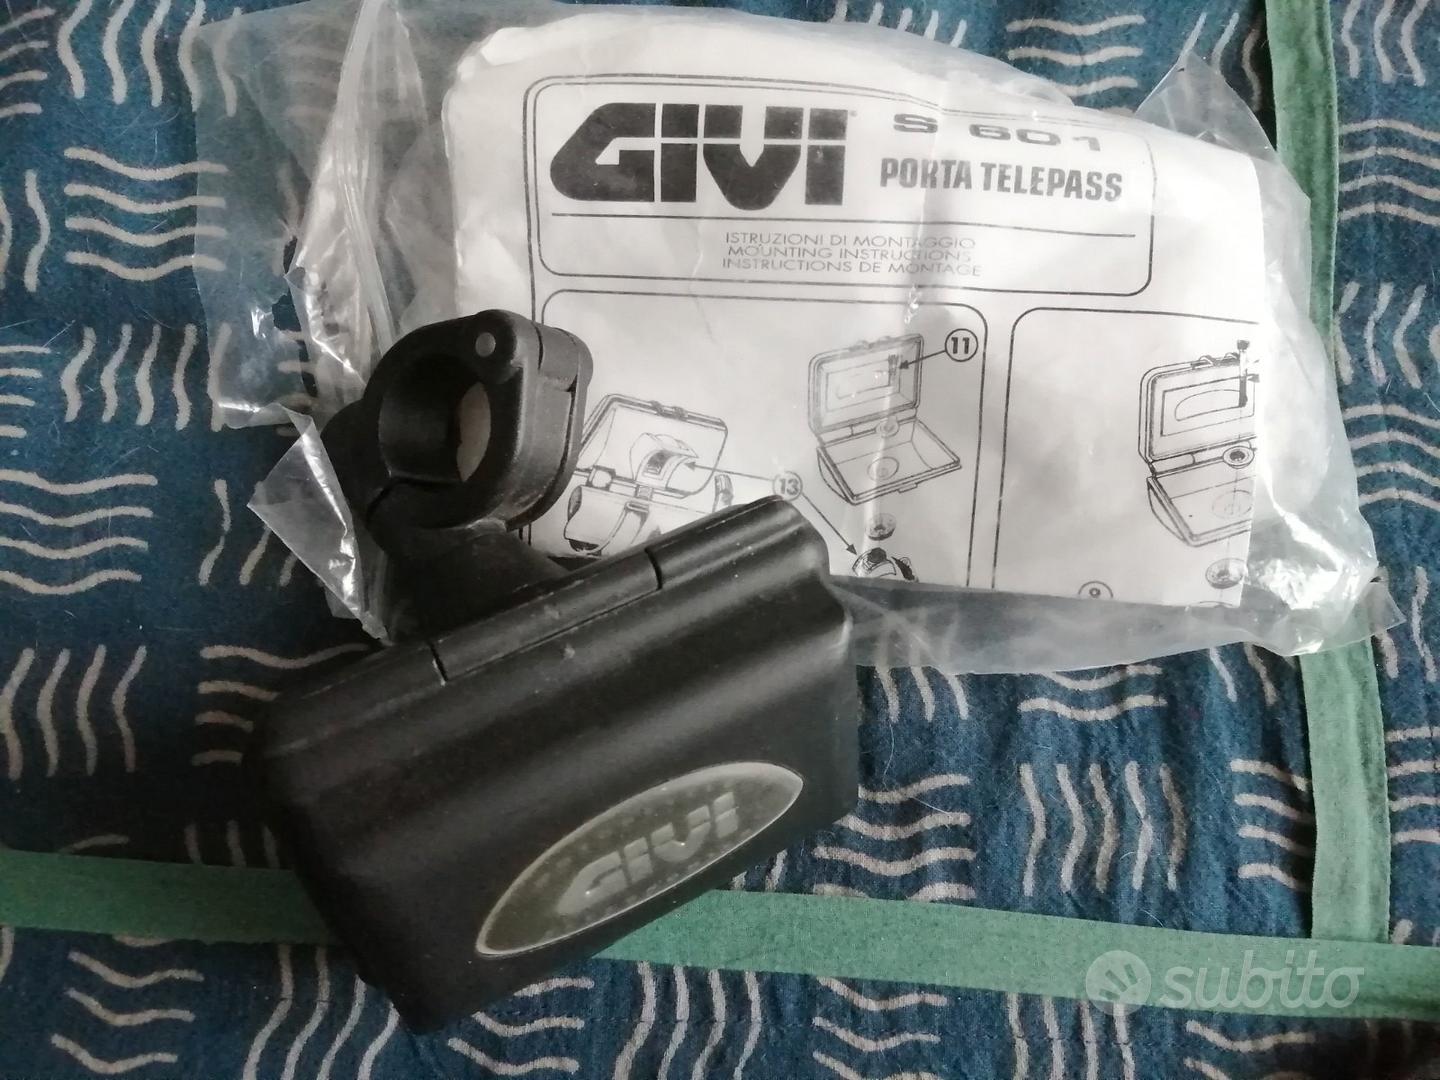 Porta telepass GIVI - Accessori Moto In vendita a Udine